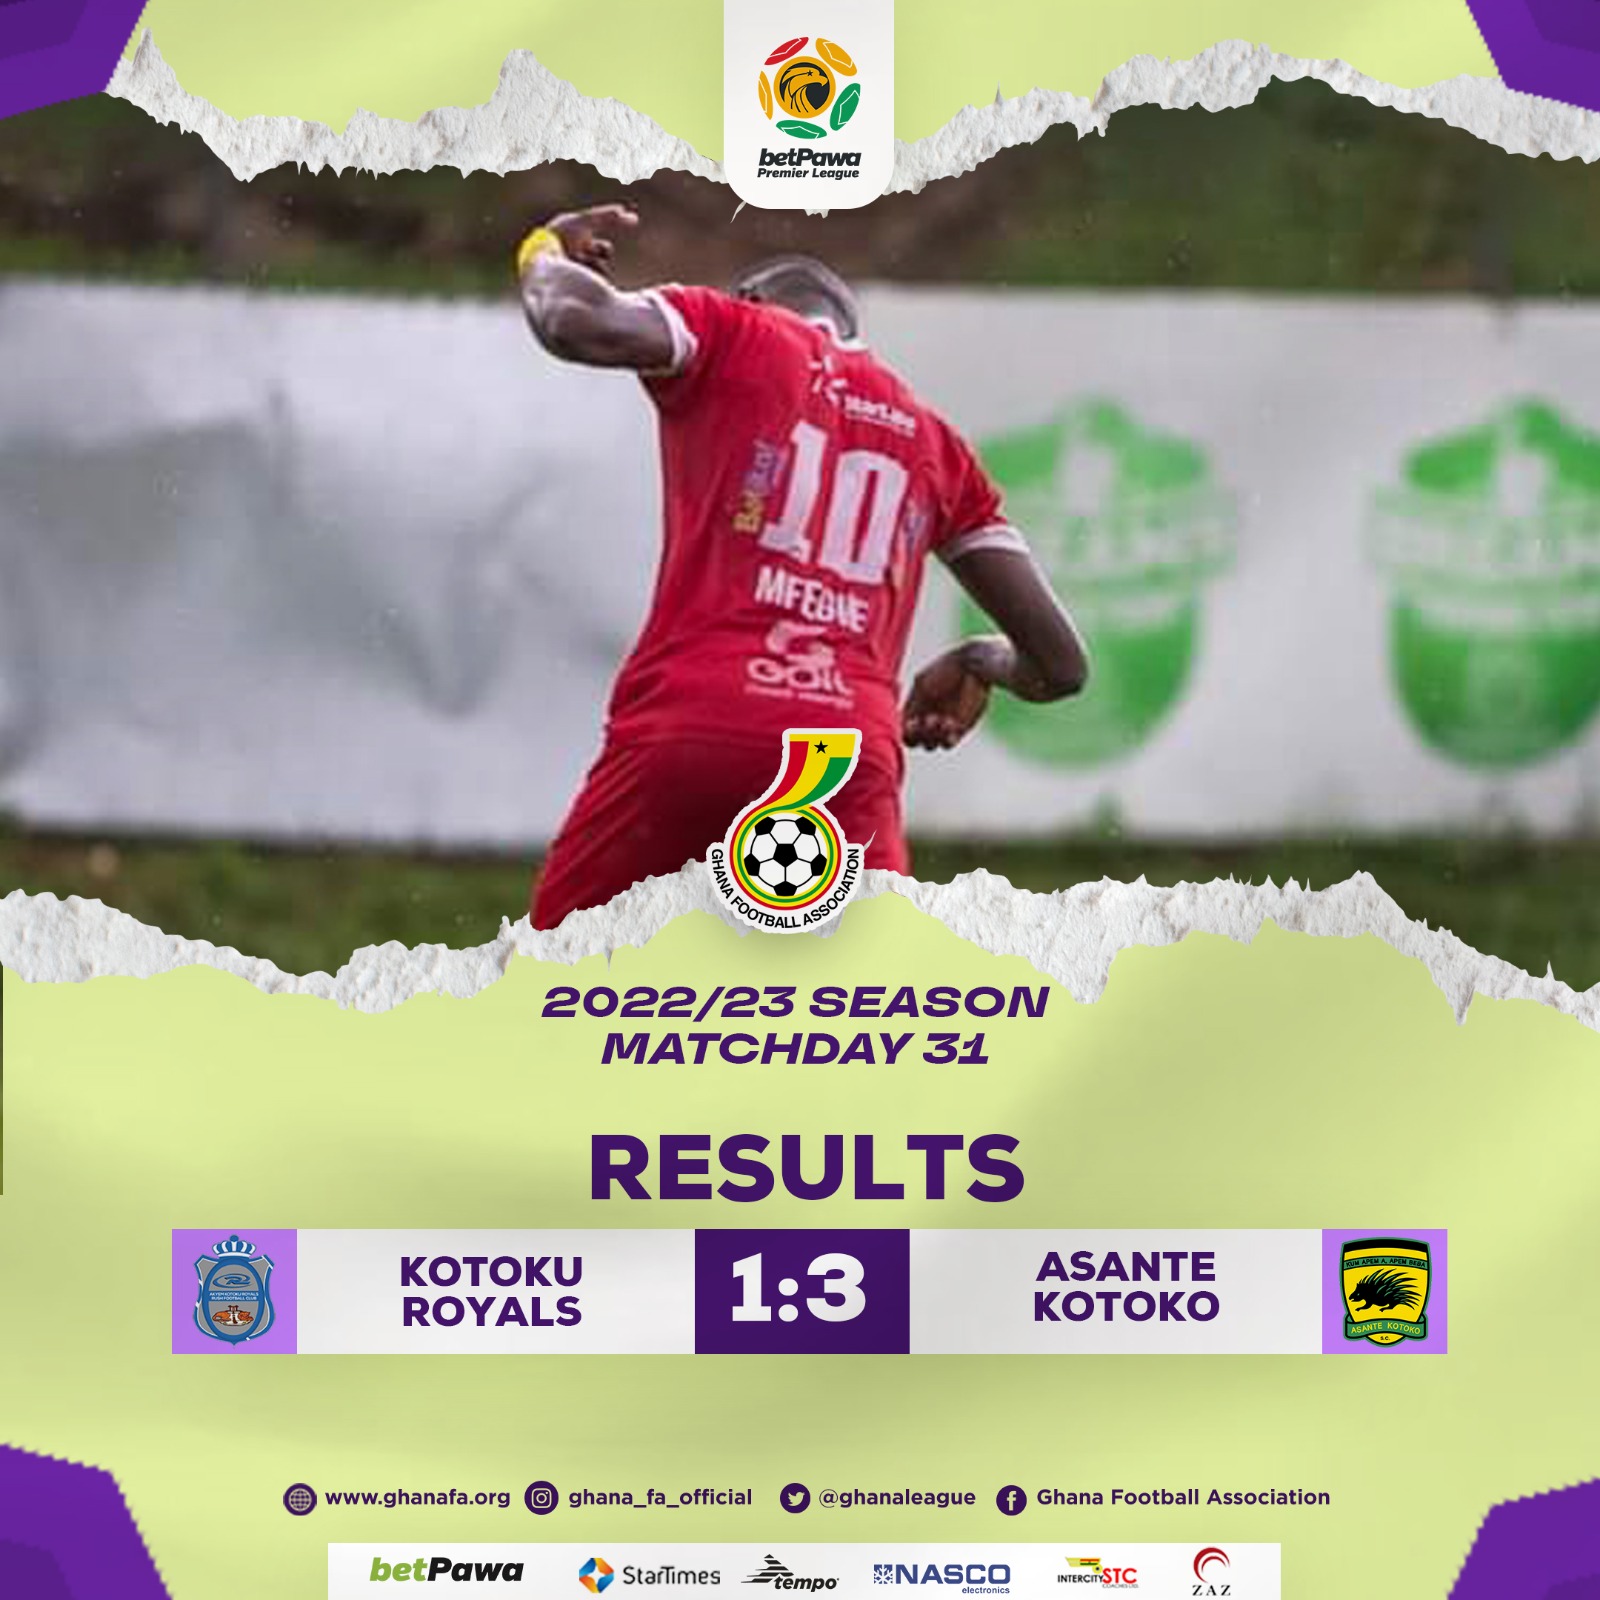 Asante Kotoko moves into top four with Kotoku Royals win - Ghana